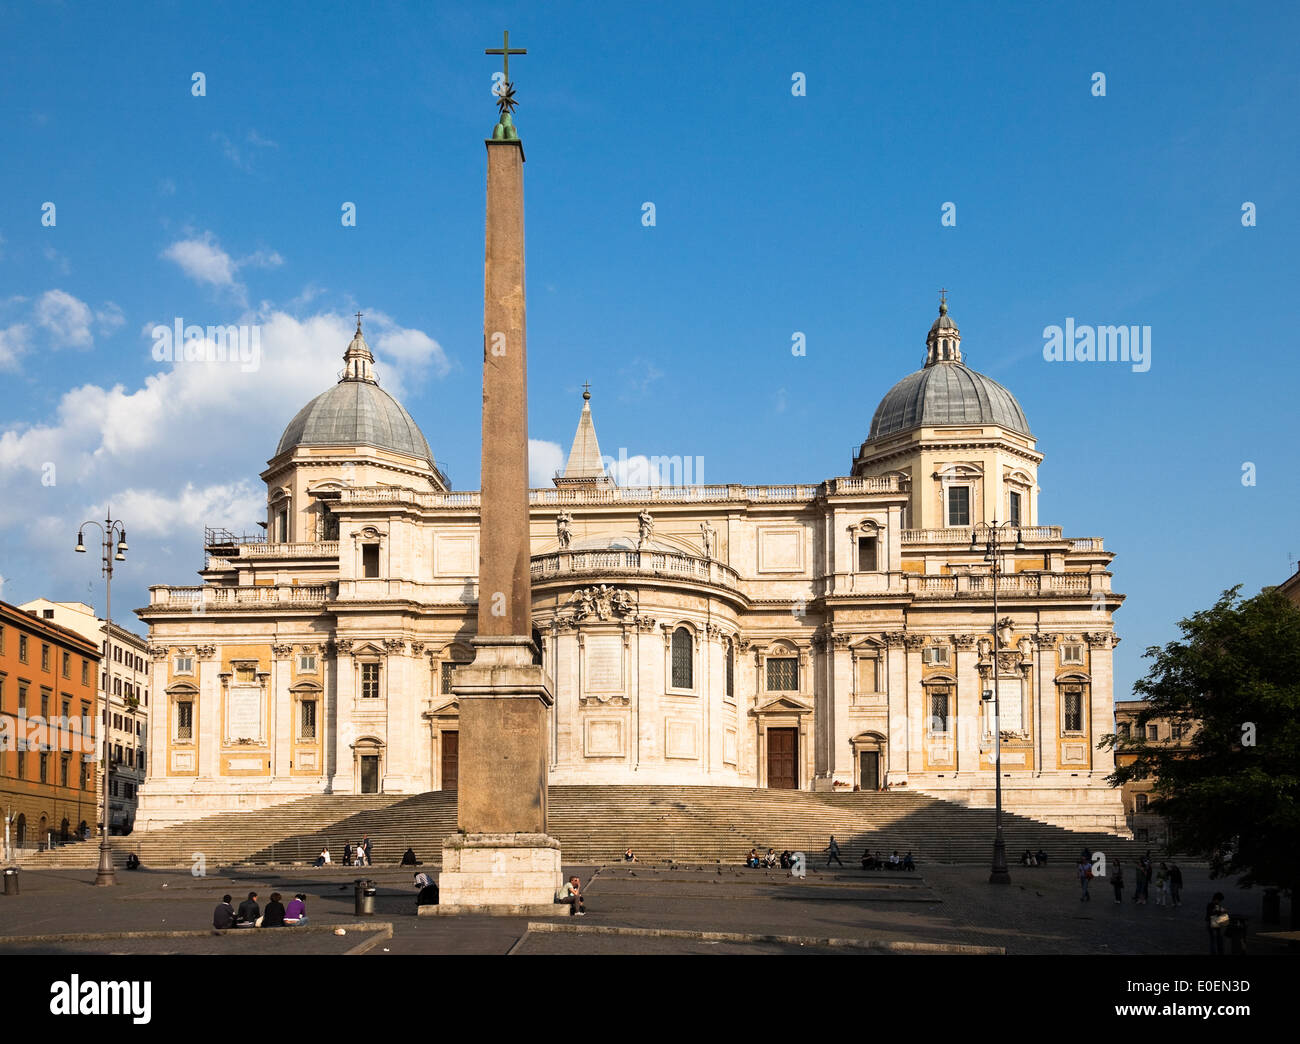 Santa Maria Maggiore, Rom, Italien - Basilica di Santa Maria Maggiore, Rome, Italy Stock Photo